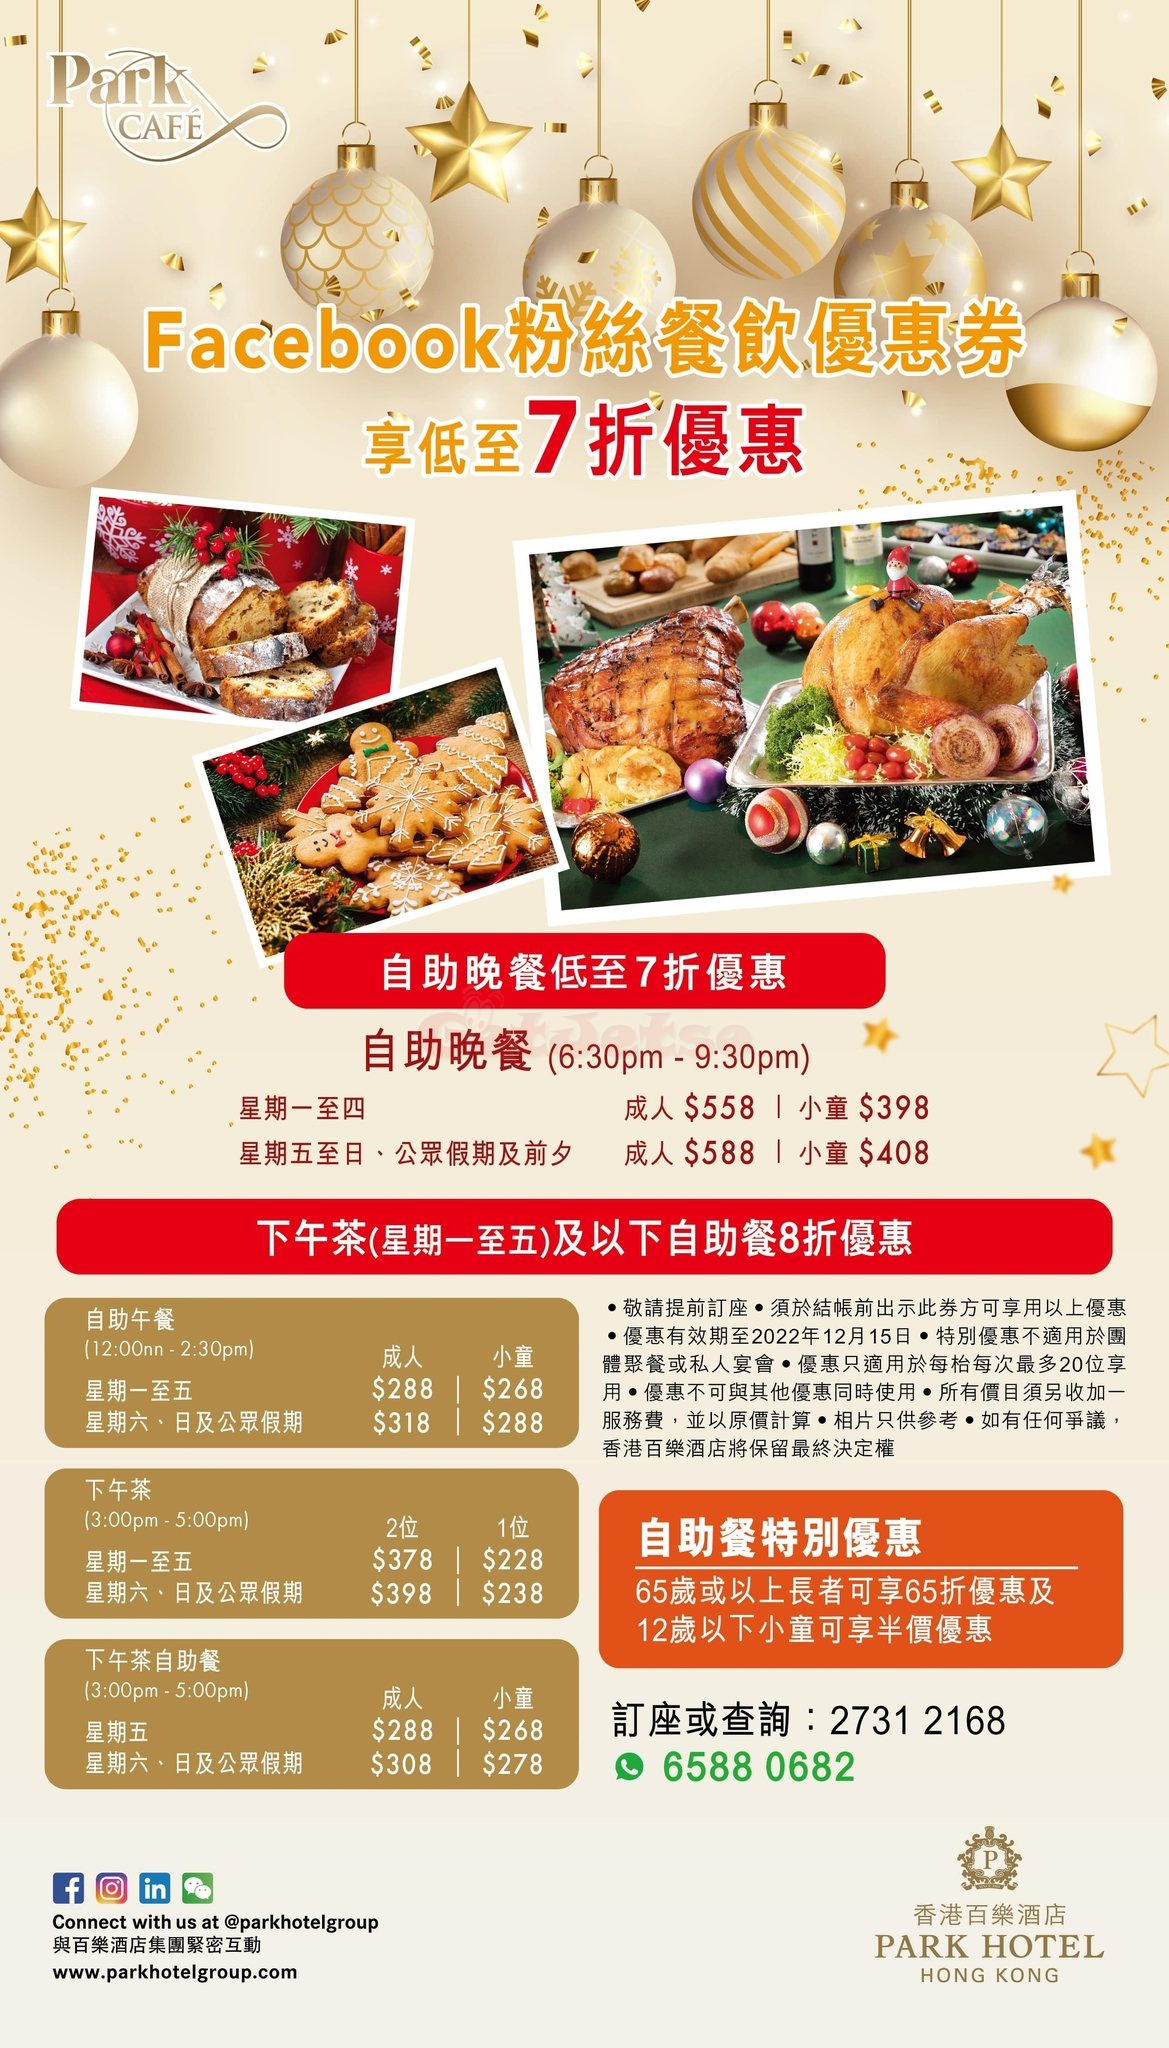 香港百樂低至7折自助餐優惠(12月1日更新)圖片5